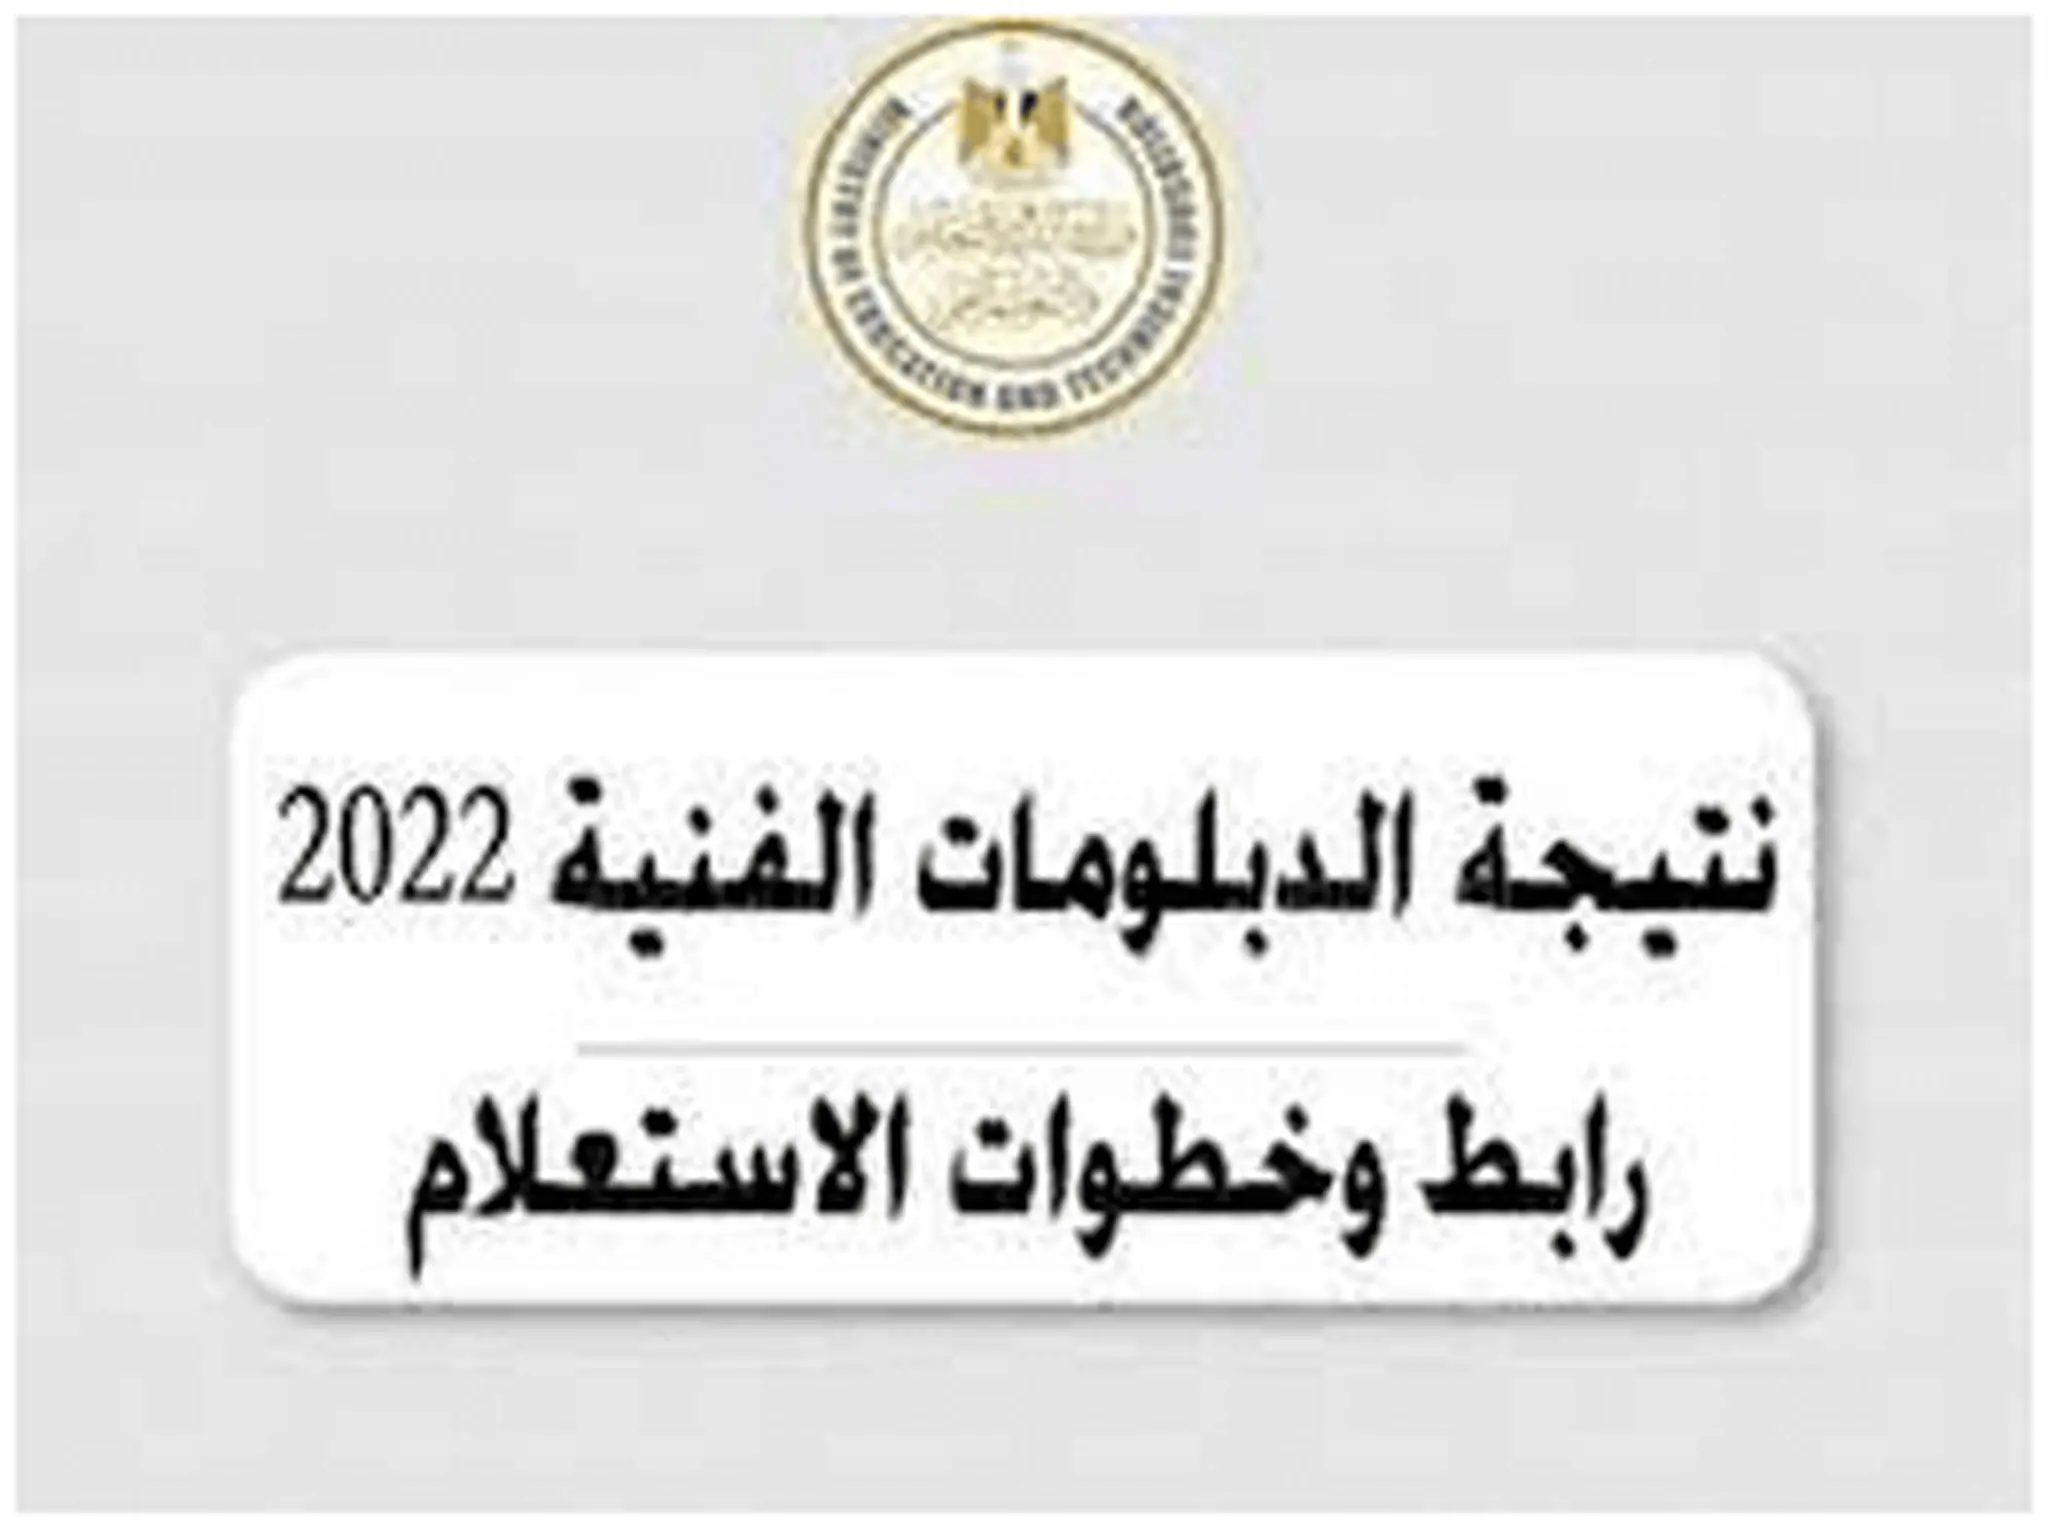 تنسيق الدبلومات الفنية الدور الثاني 2022 عبر الرابط الرسمي